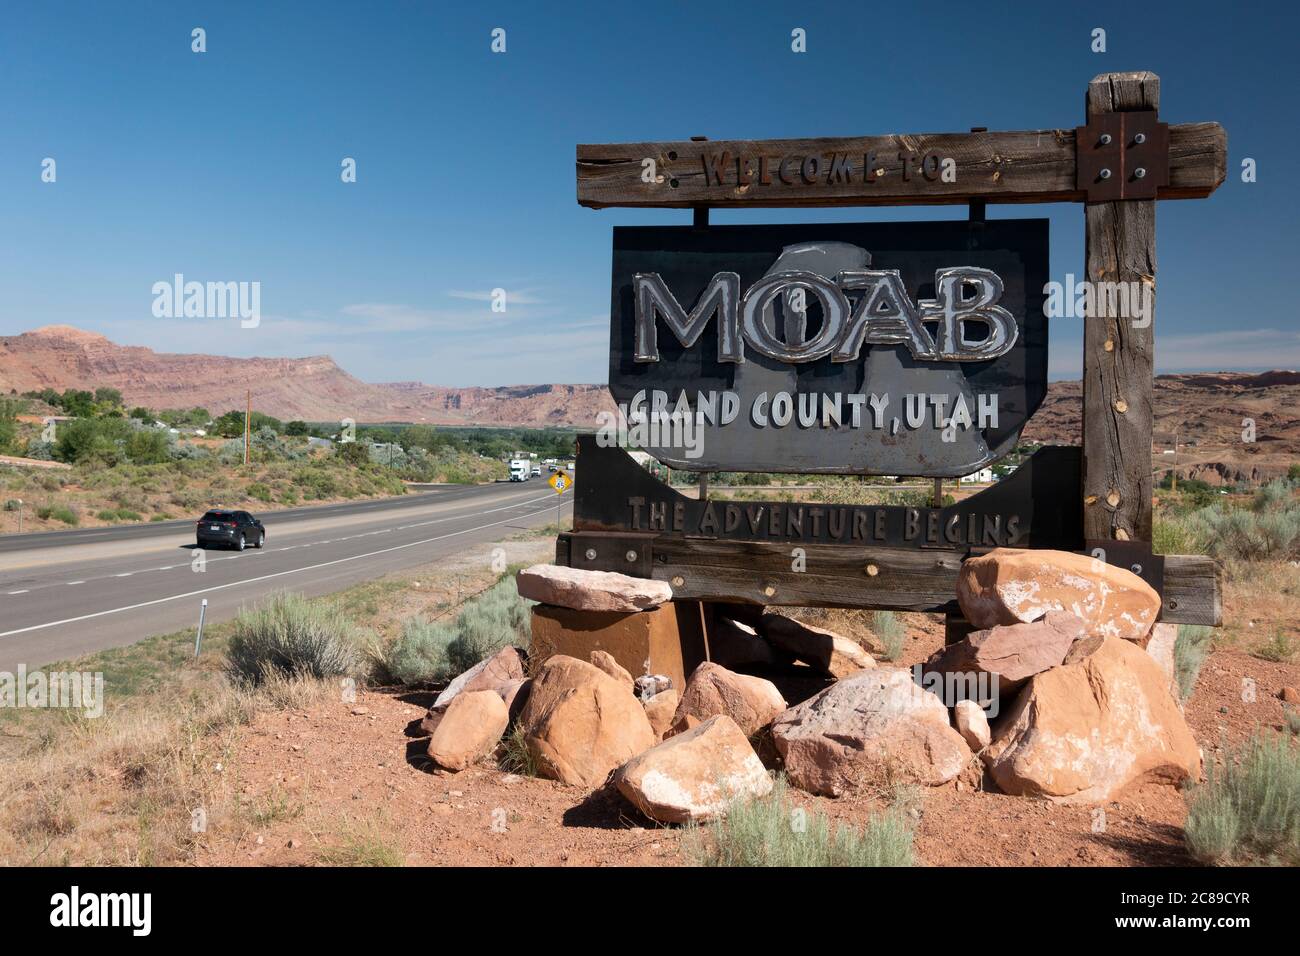 Offizielle Autobahn-Begrüßungsschild für die Stadt Moab, Grand County, Utah Stockfoto